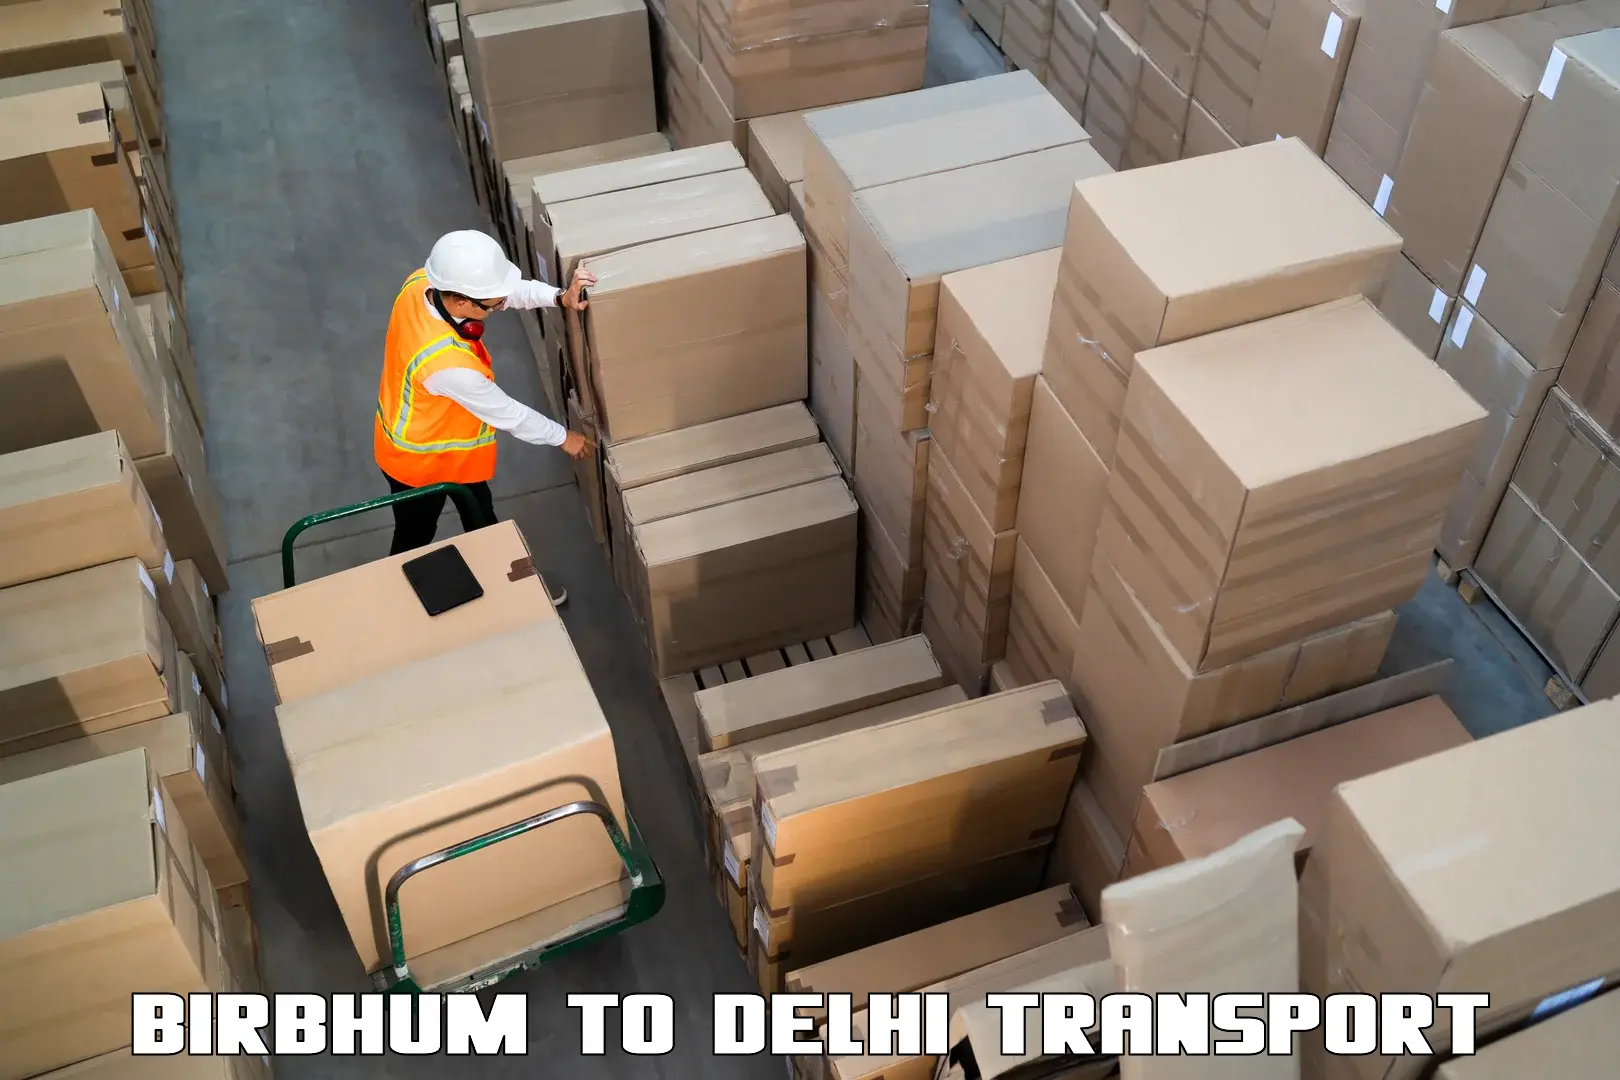 Pick up transport service in Birbhum to IIT Delhi